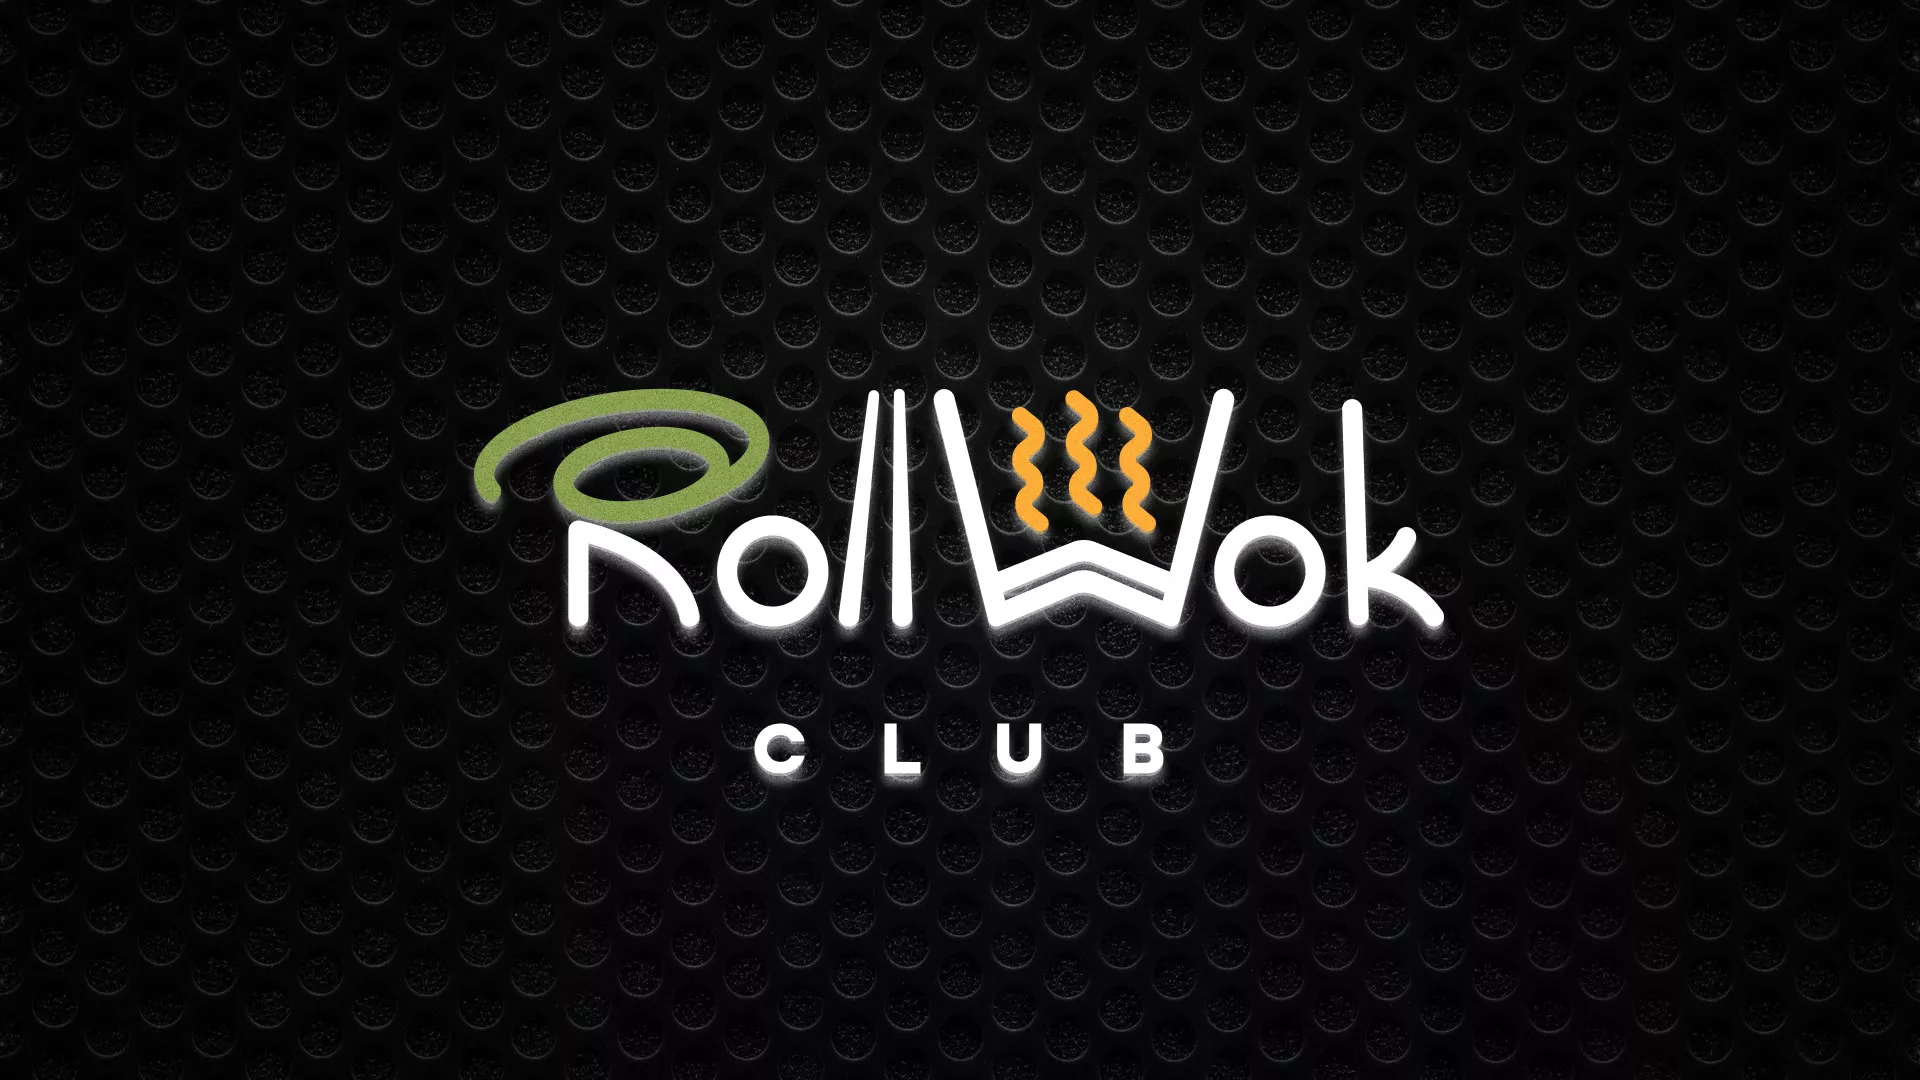 Брендирование торговых точек суши-бара «Roll Wok Club» в Биробиджане